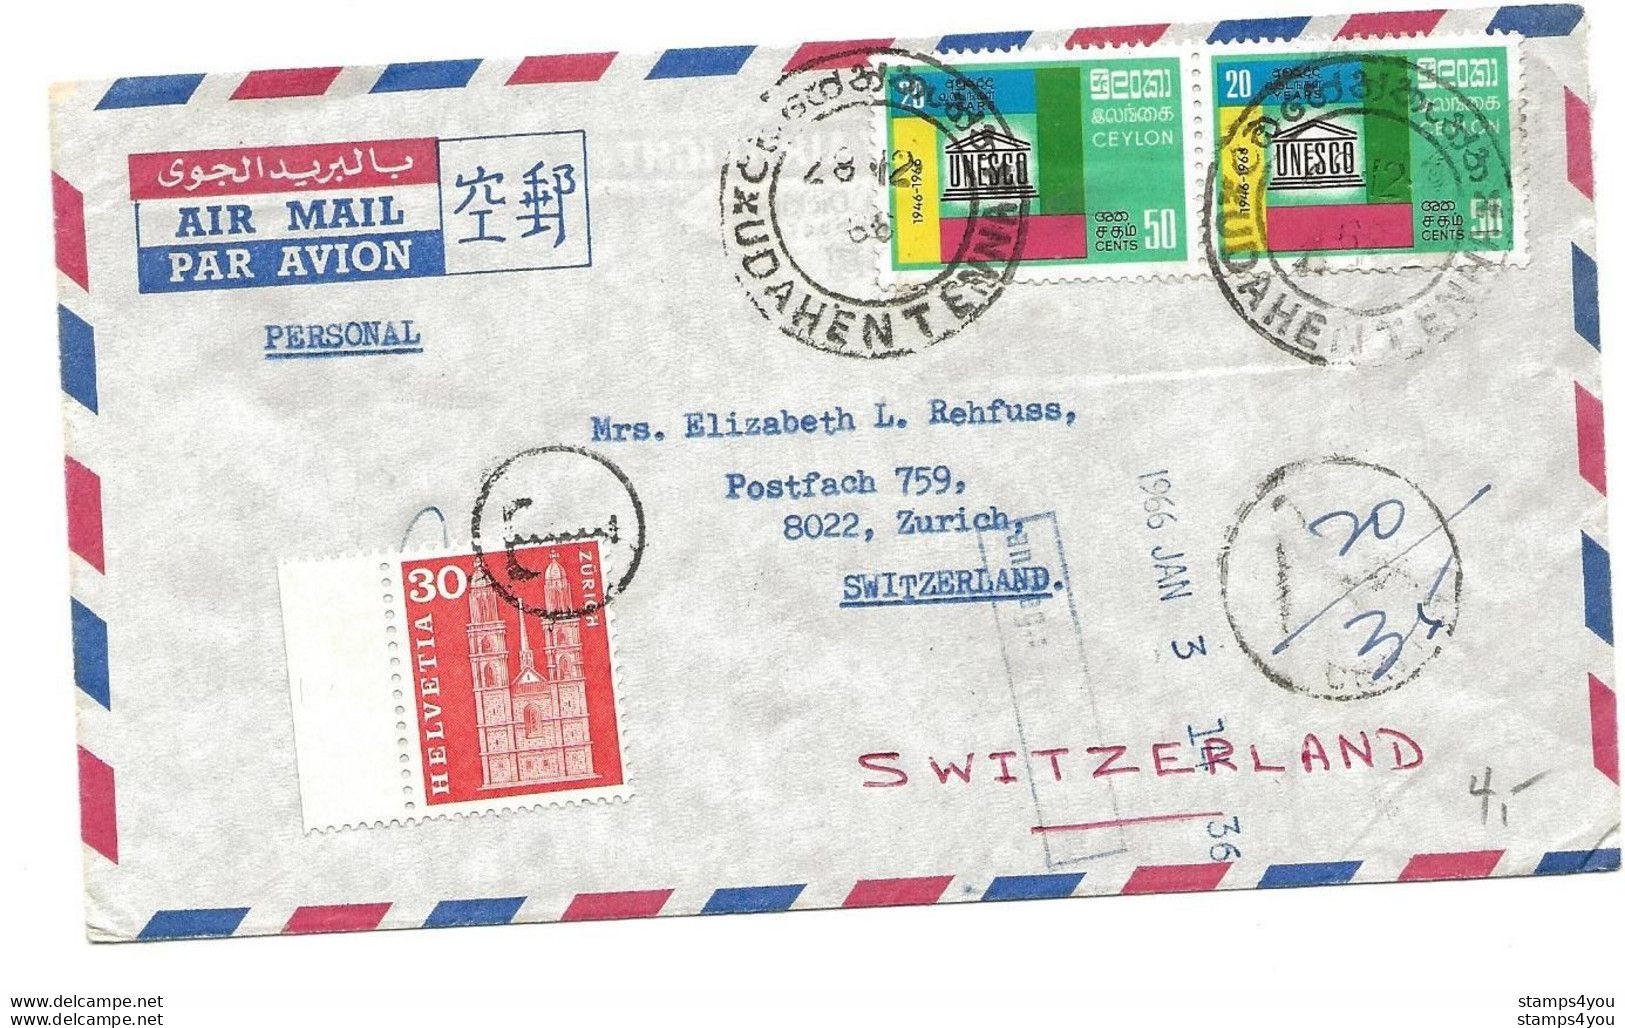 104 - 69 - Enveloppe Envoyée De Ceylon En Suisse - Timbre Suisse Avec Cachet "T" Taxe 1966 - Impuesto